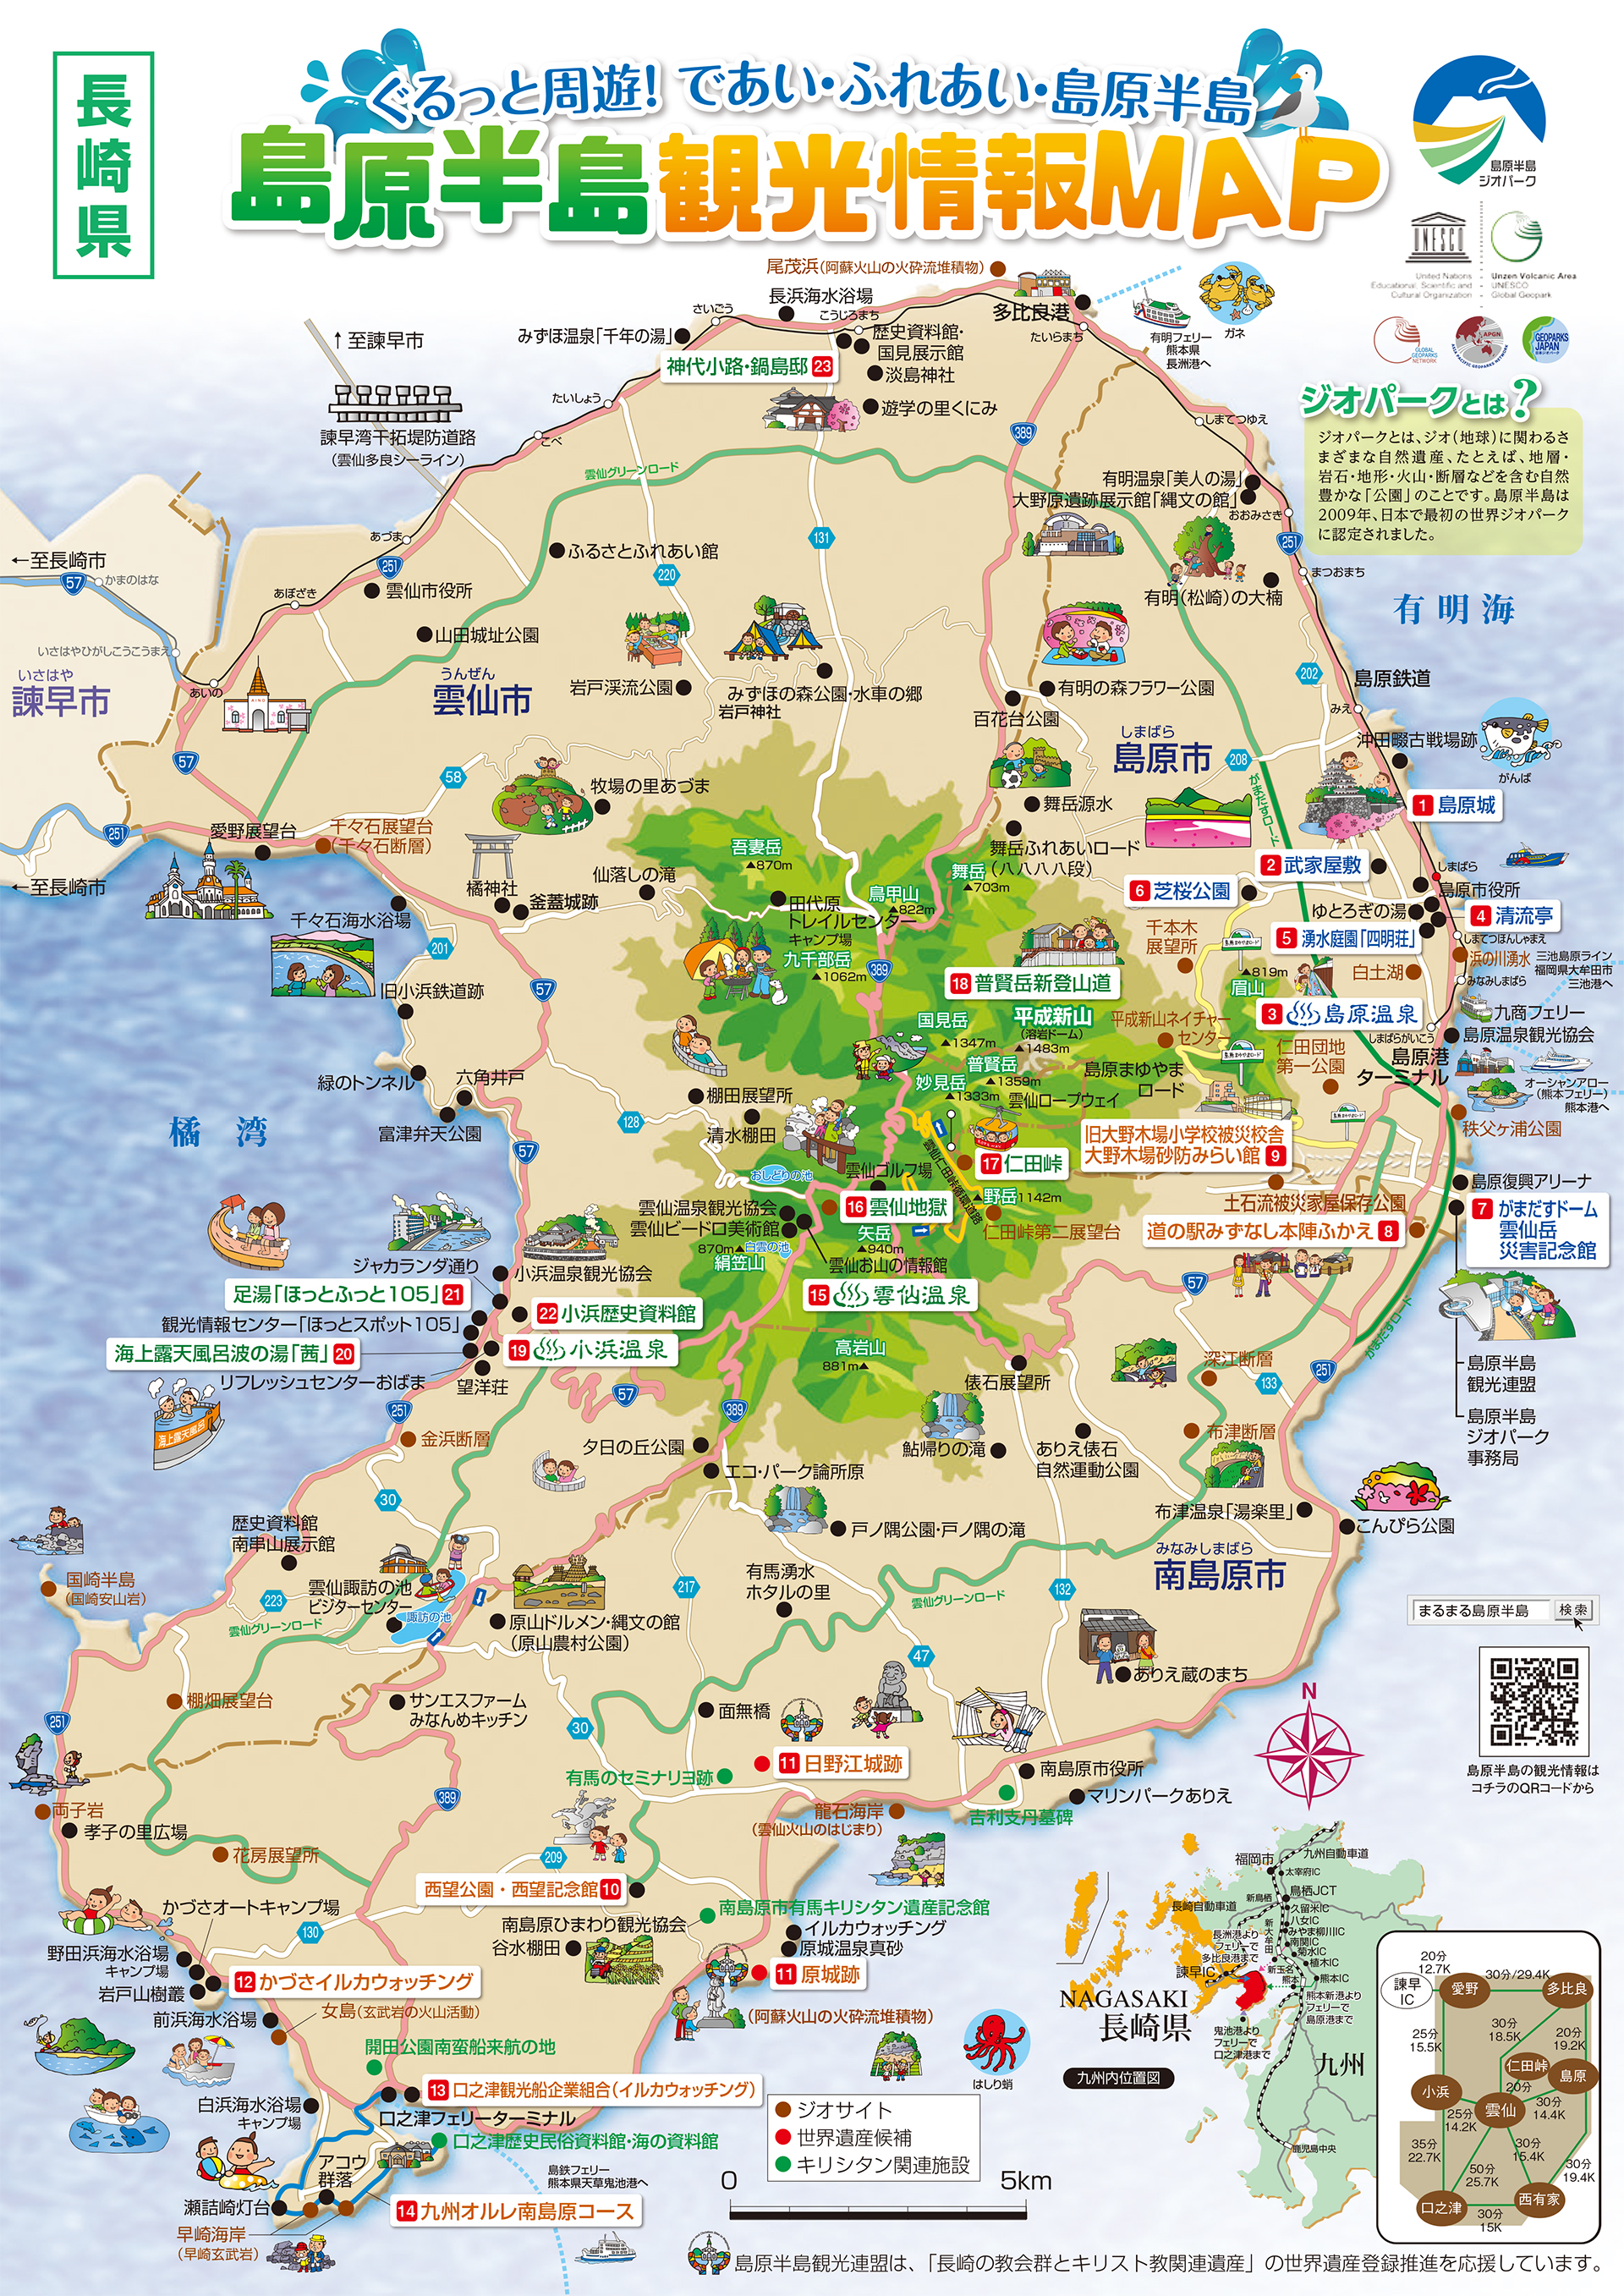 島原半島 観光情報 マップ 地図 九州をドローンで空撮した動画 4k写真 観光 旅行 名所 温泉 ランチ 宿泊 道の駅 地図等に関して掲載